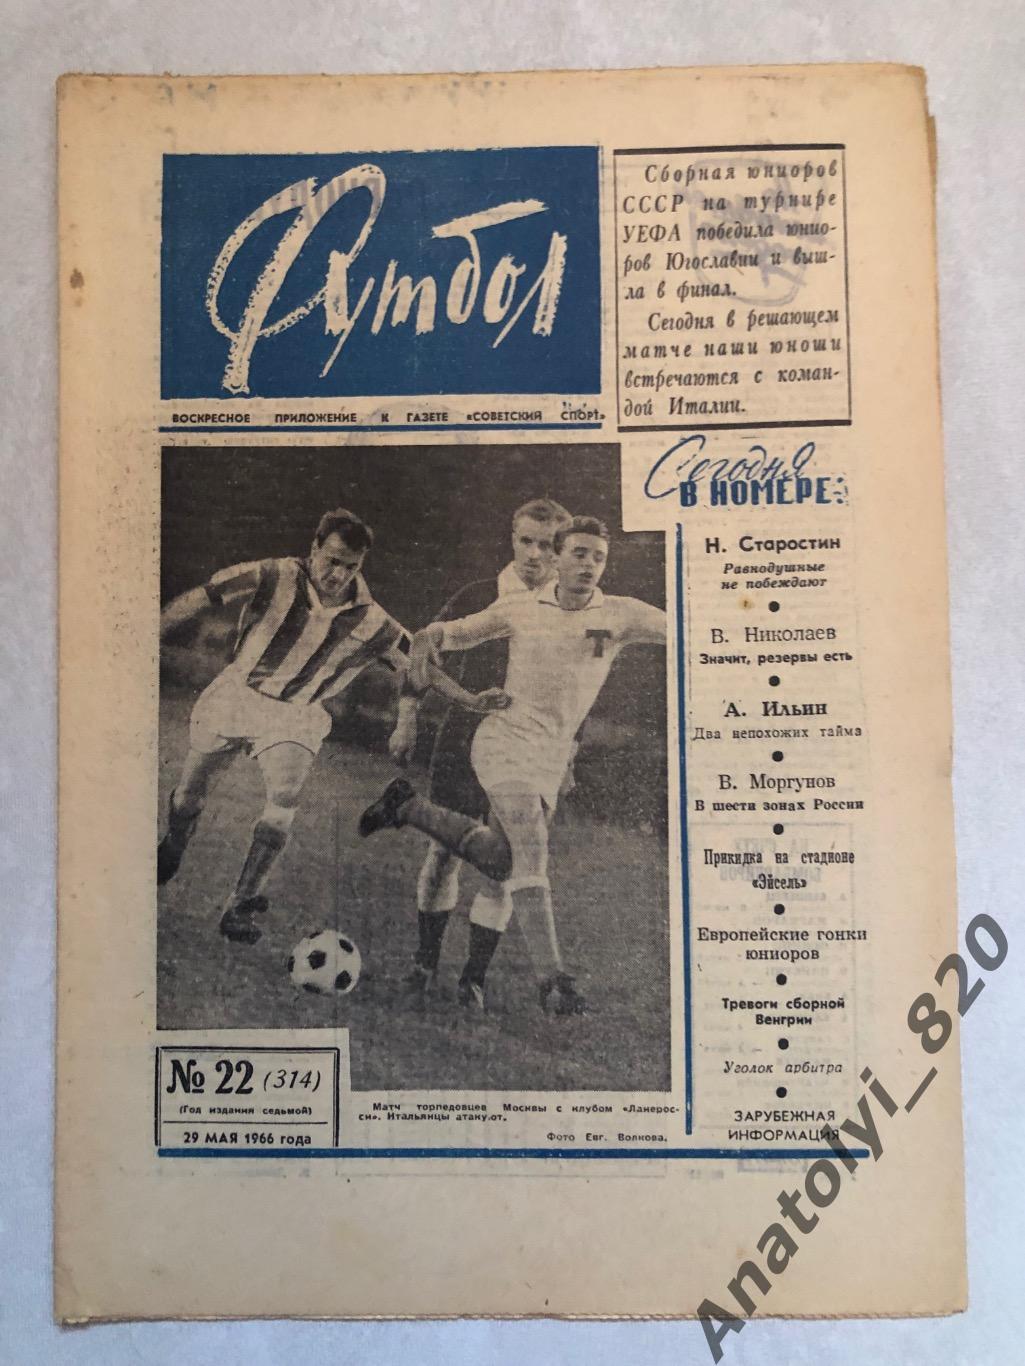 Еженедельник футбол номер 22 от 29.05.1966